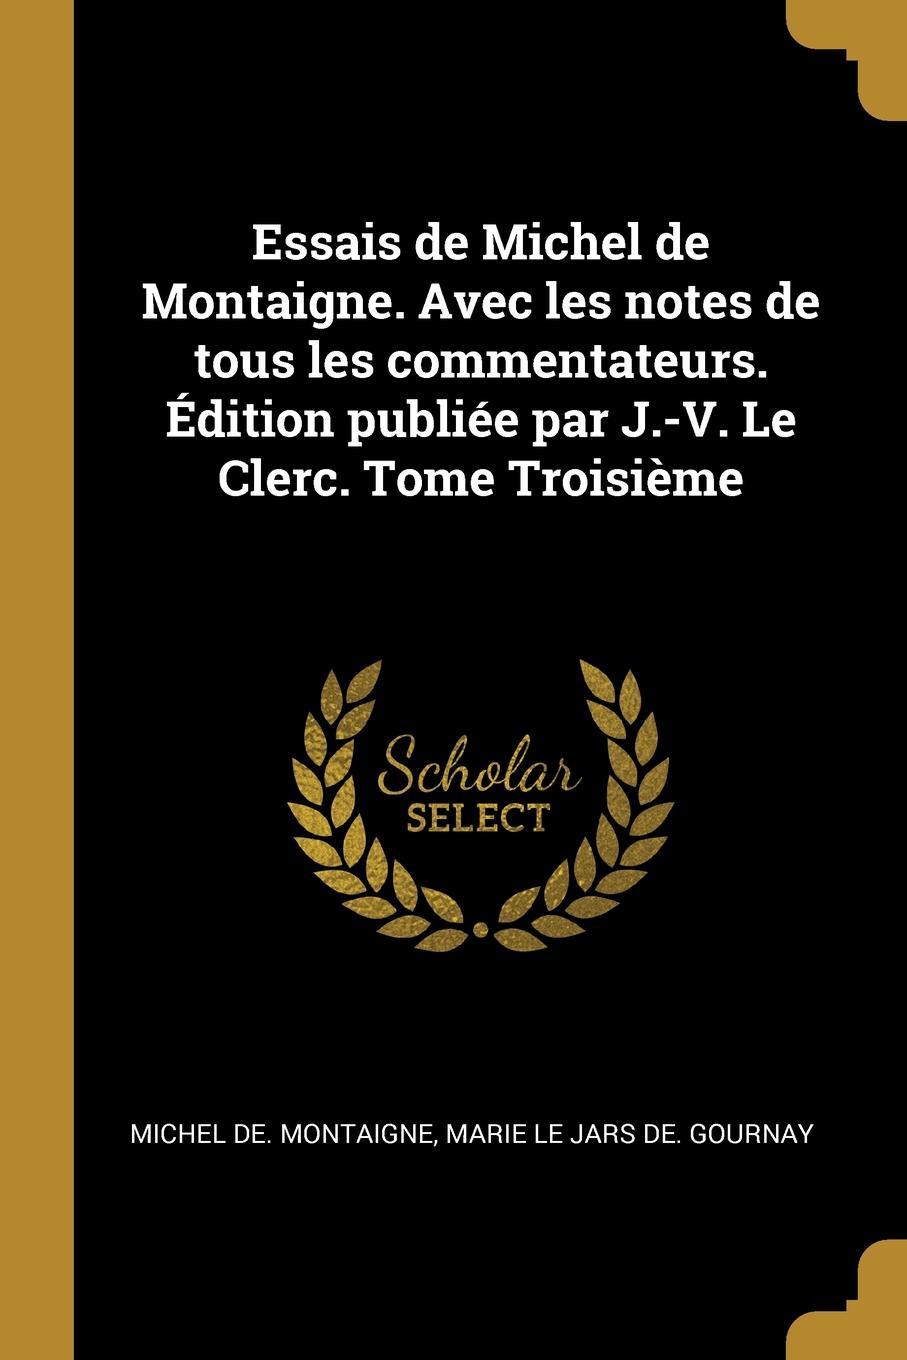 Essais de Michel de Montaigne. Avec les notes de tous les commentateurs. Edition publiee par J.-V. Le Clerc. Tome Troisieme